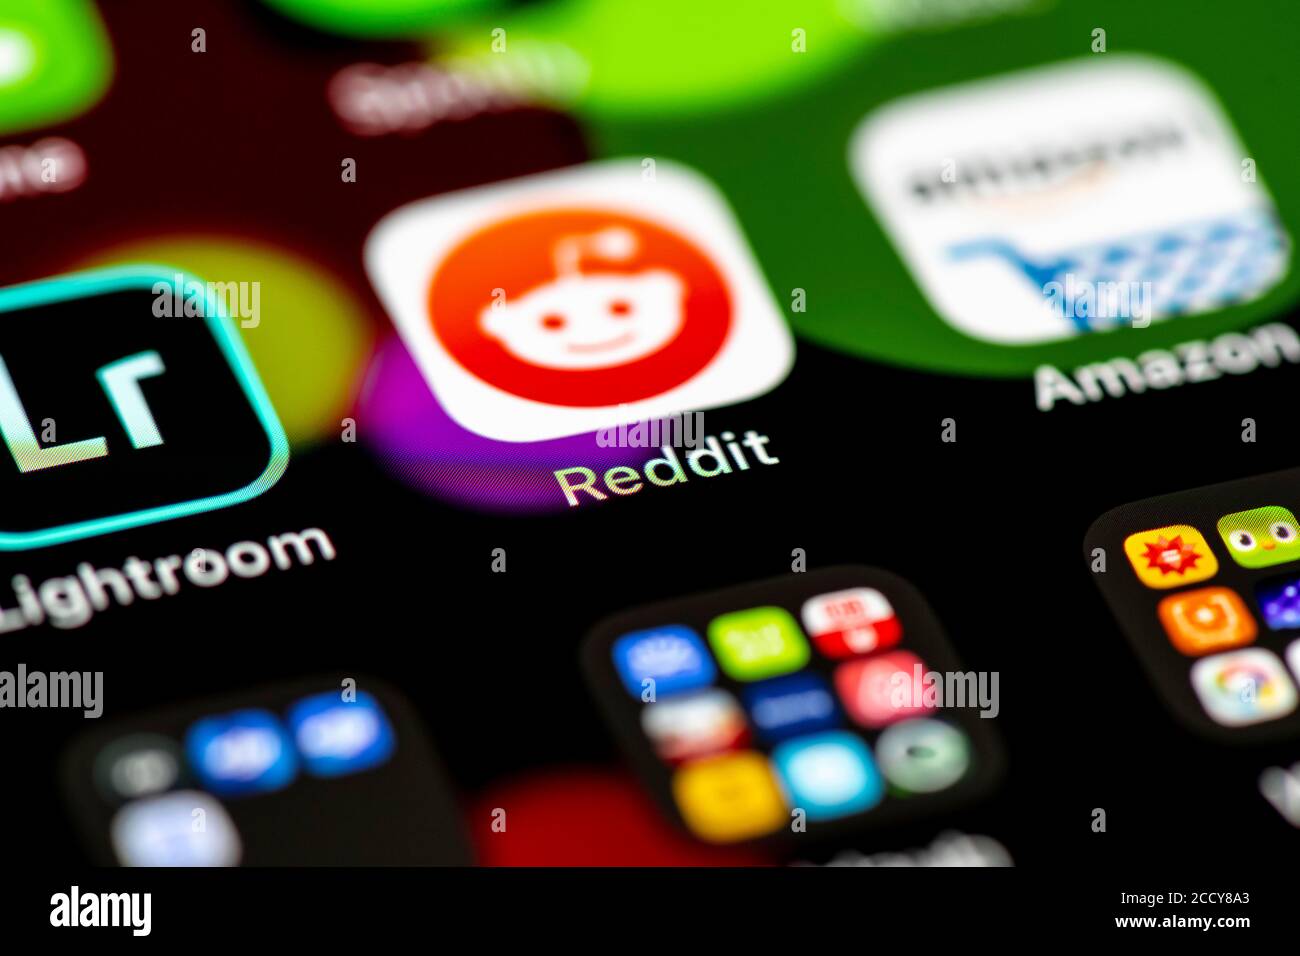 Reddit, redes sociales, iconos de aplicaciones en la pantalla de un teléfono móvil, iPhone, smartphone, primeros planos, pantalla completa Foto de stock